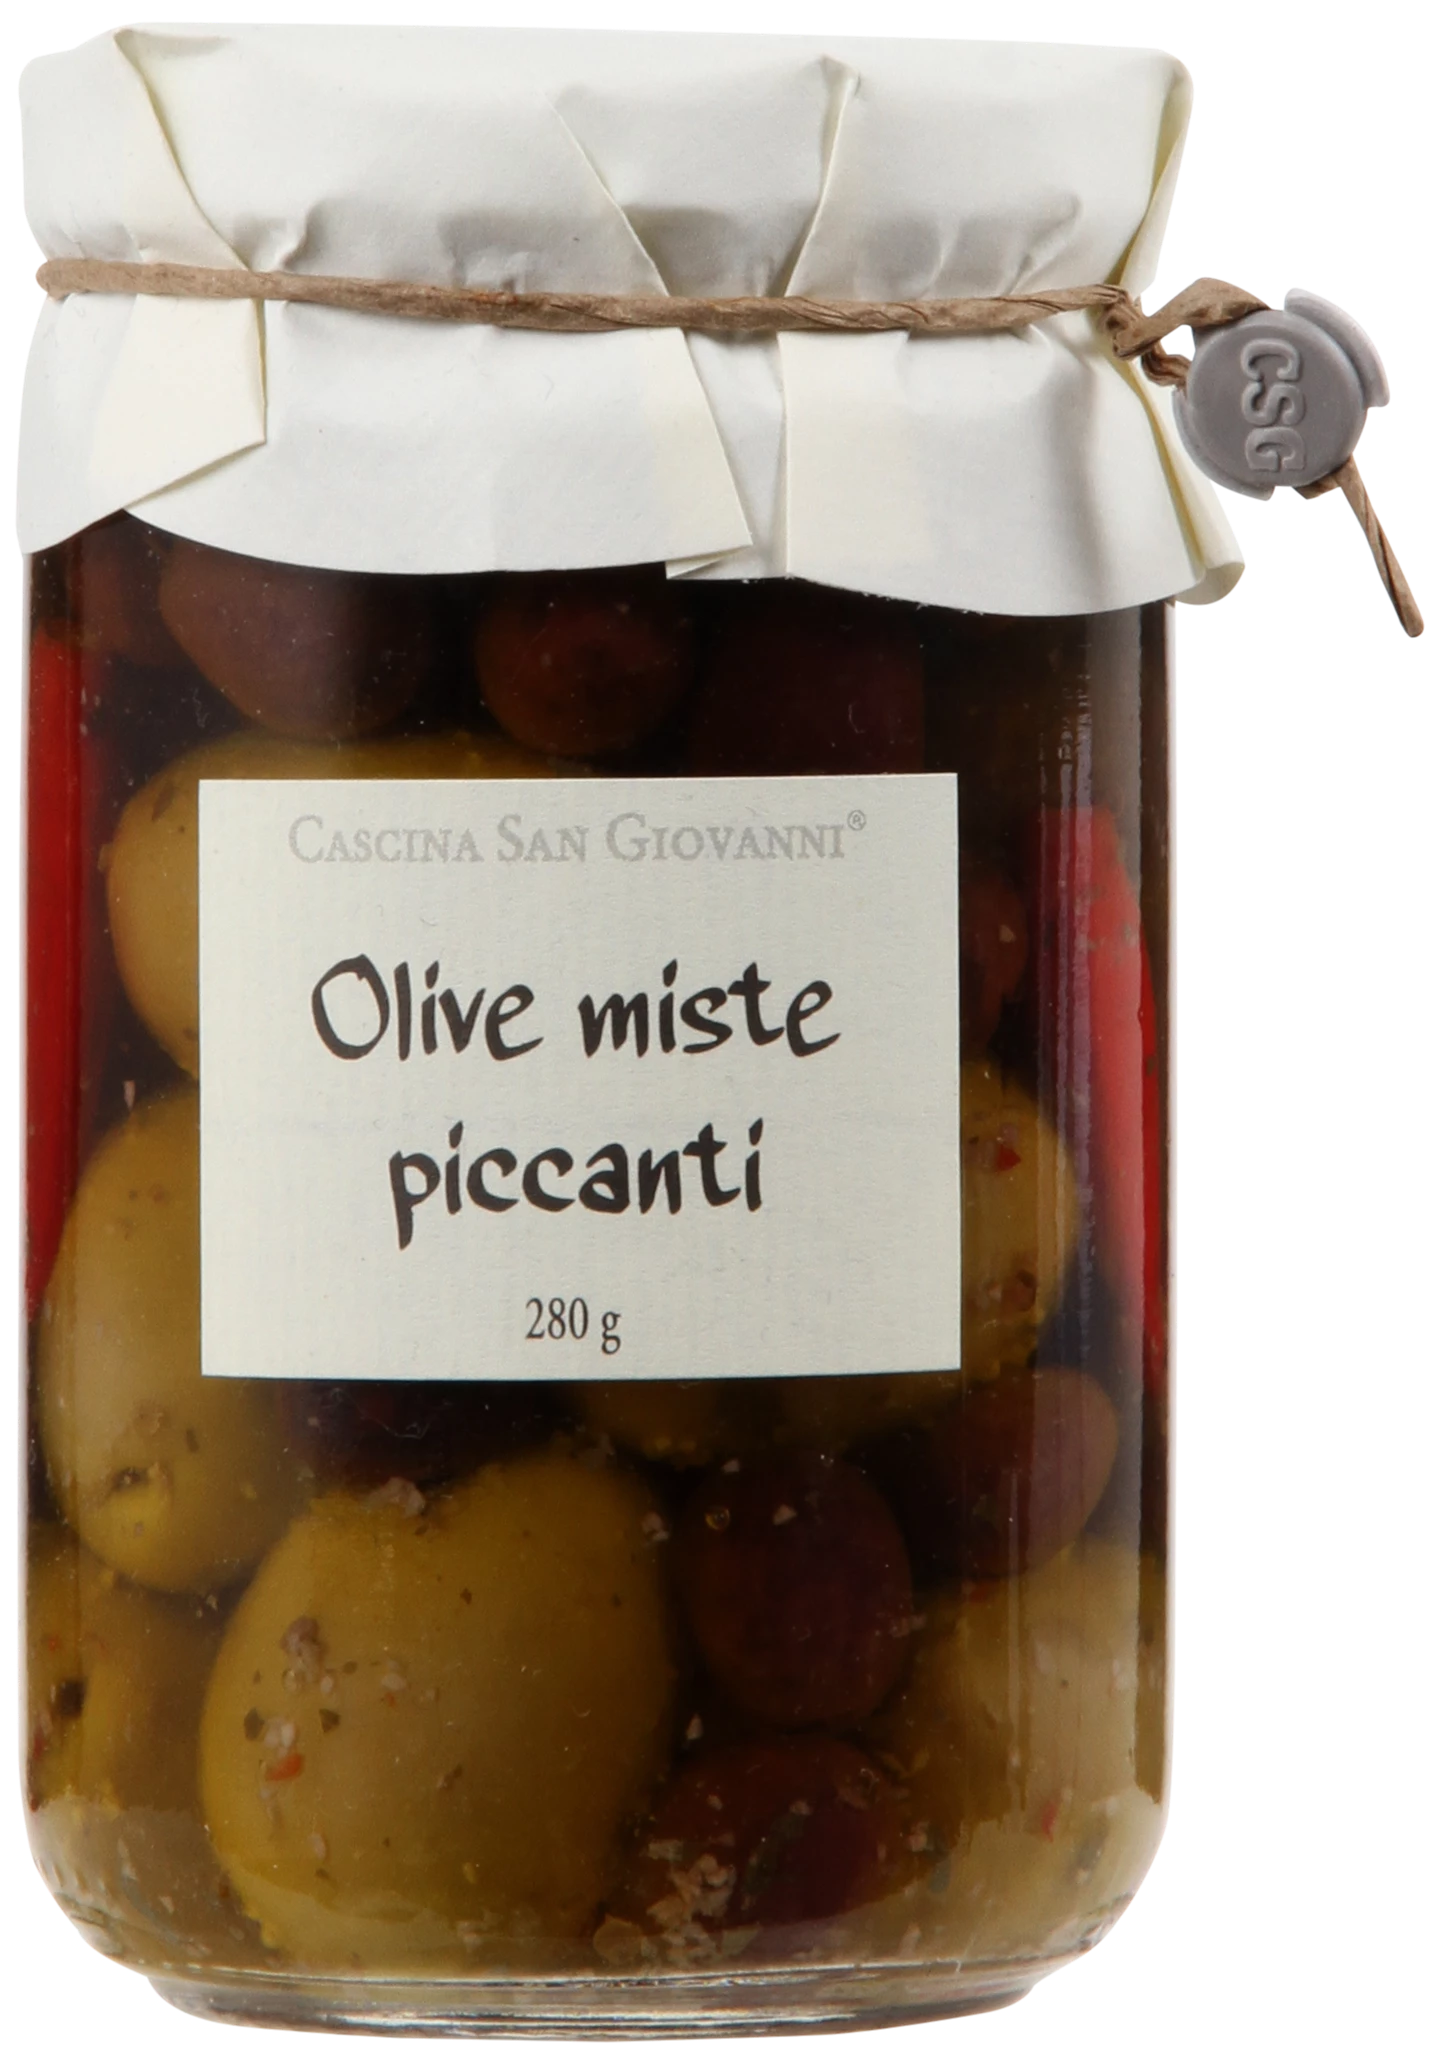 Løgismose Delikatesser Cascina San Giovanni Blandede oliven med chili 280g - 210898